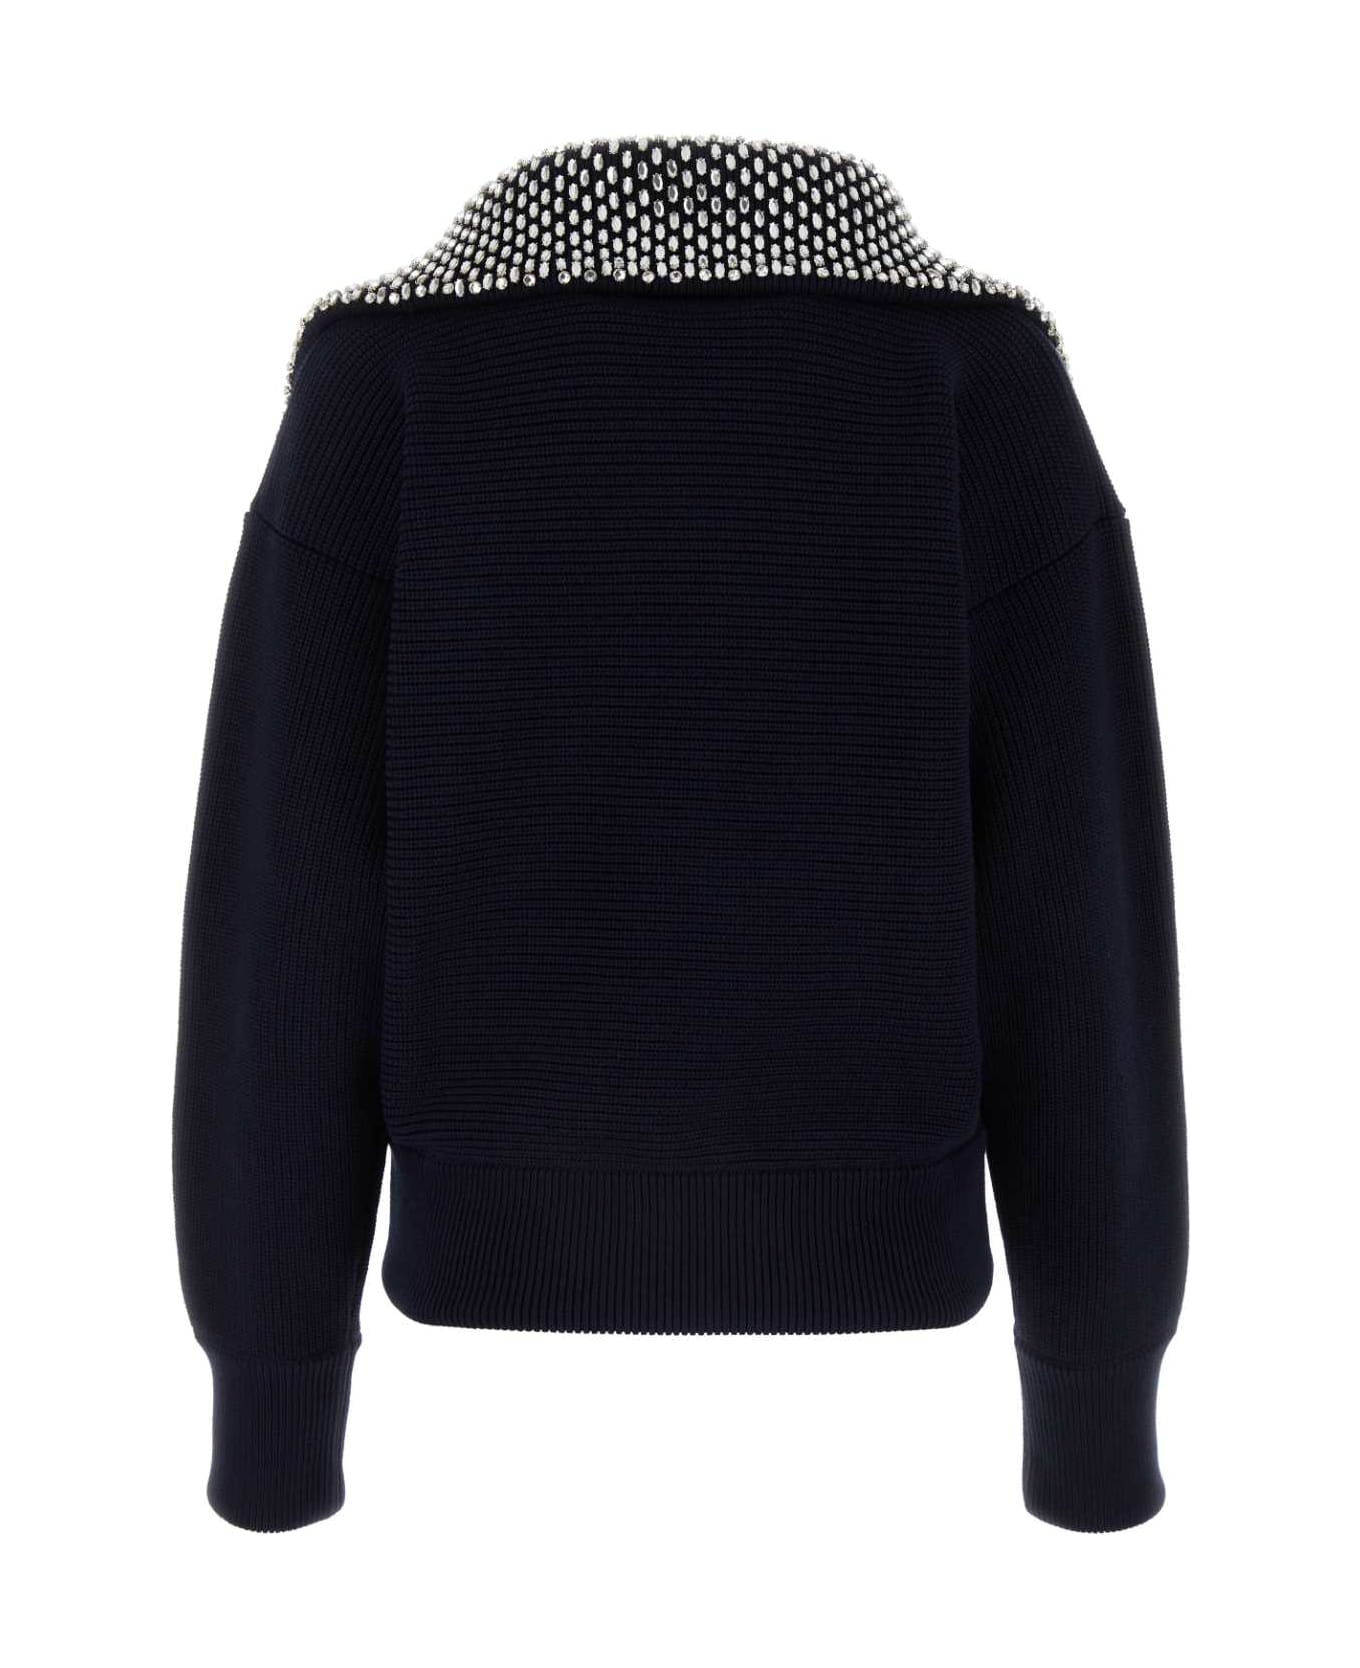 Gucci Navy Blue Cotton Blend Sweater - NAVYMIX